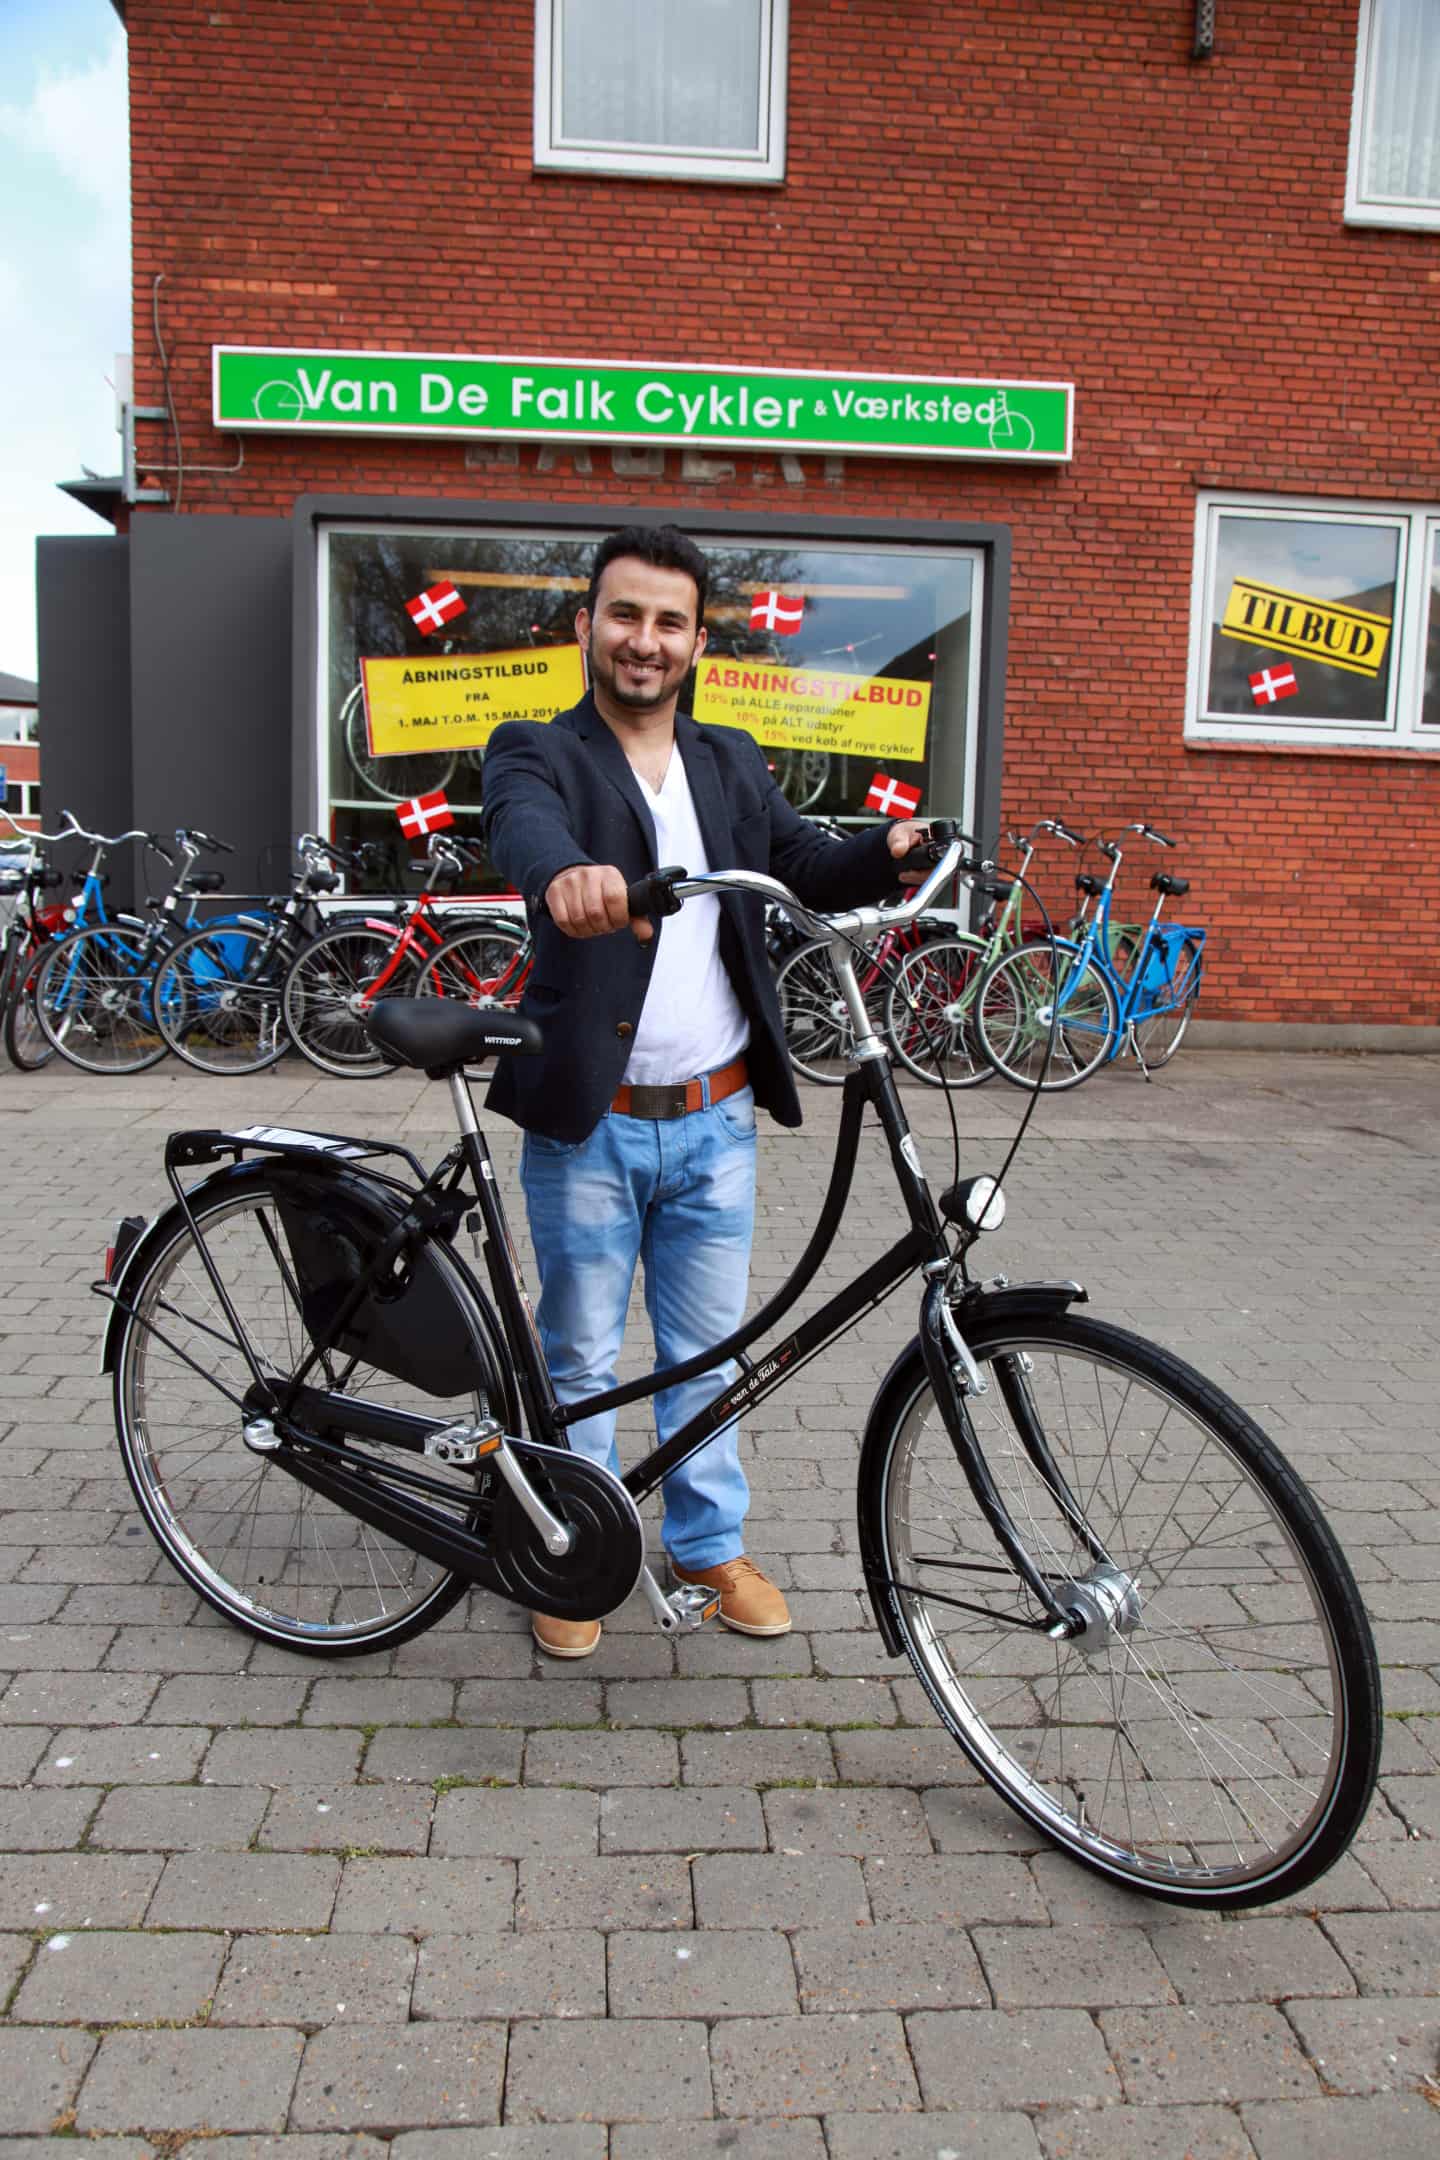 ubetinget Intensiv Afrika Ny butik med salg af Van De Falk-cykler | fyens.dk